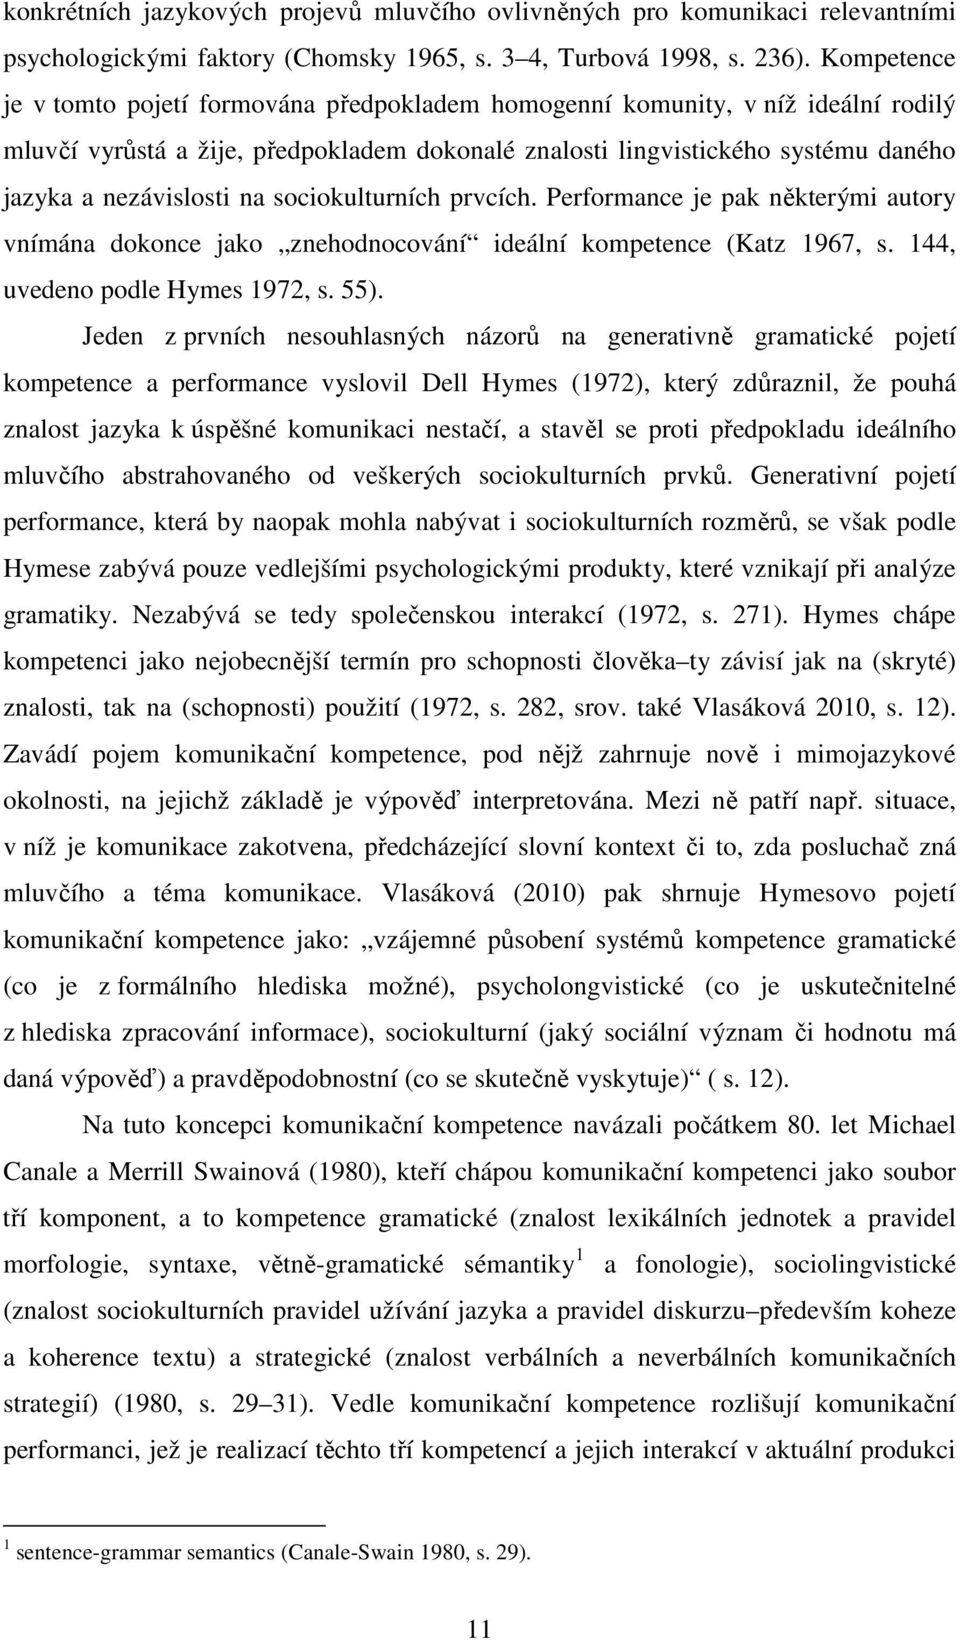 na sociokulturních prvcích. Performance je pak některými autory vnímána dokonce jako znehodnocování ideální kompetence (Katz 1967, s. 144, uvedeno podle Hymes 1972, s. 55).